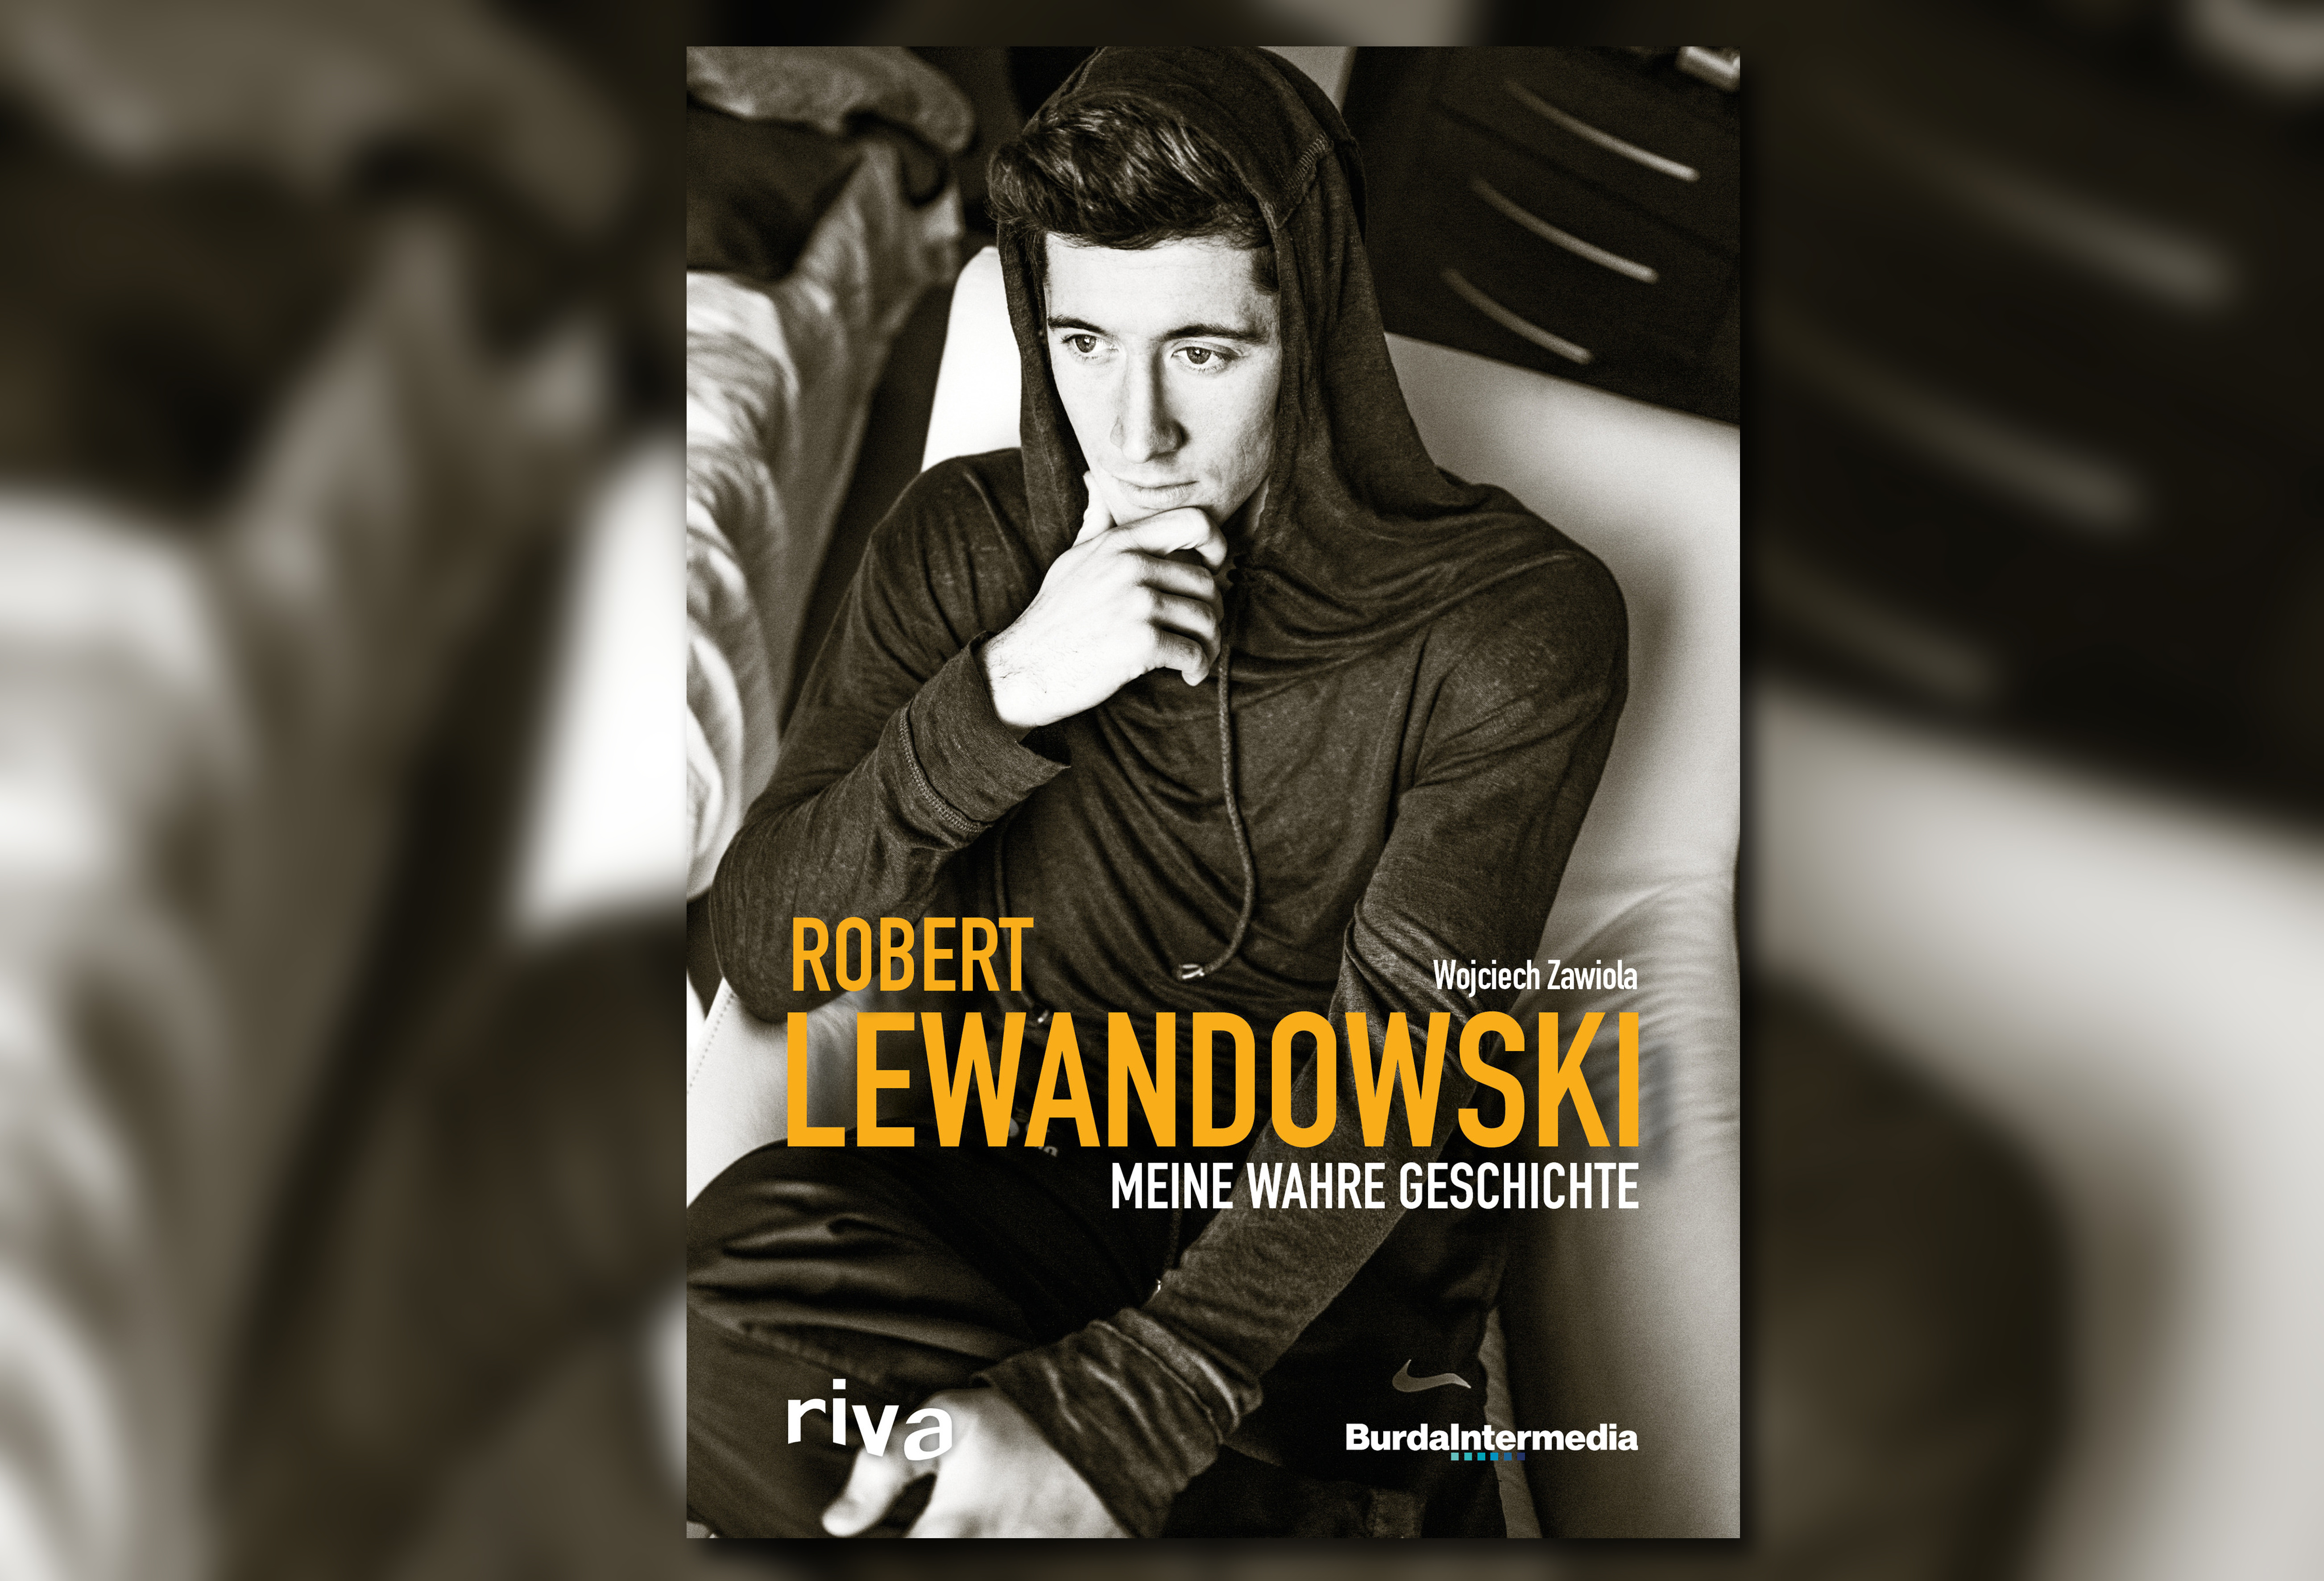 Biografia de Lewandowski traz capítulos polêmicos da vida do atacante (Foto: Reprodução)